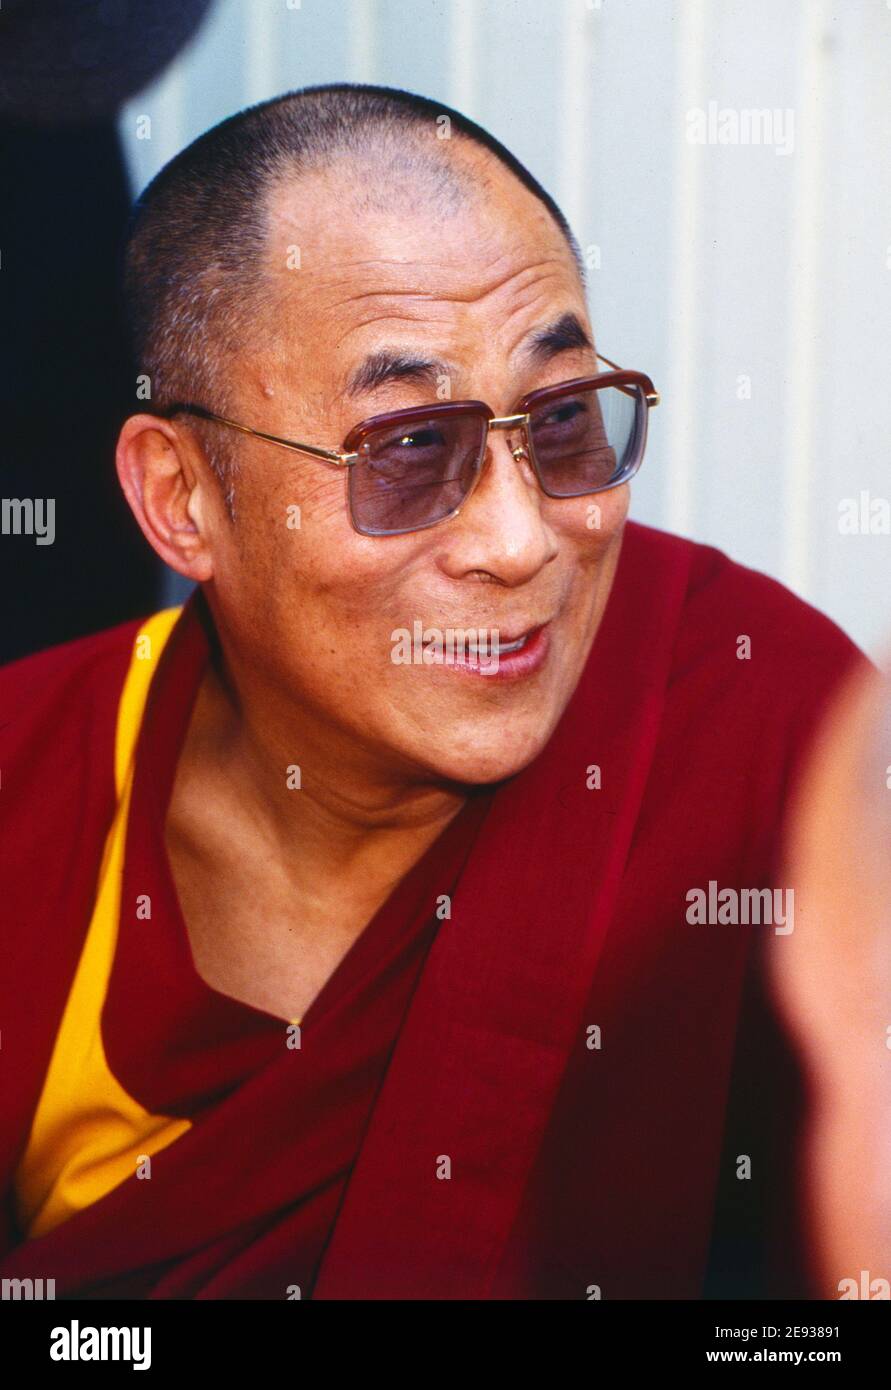 Dalai lama Tenzin Gyatso, der 14. Dalai lama, buddhistischer Mönch sowie weltliches und geistliches Oberhaupt der Regierung von Tibet, Deutschland um 1995. Foto Stock